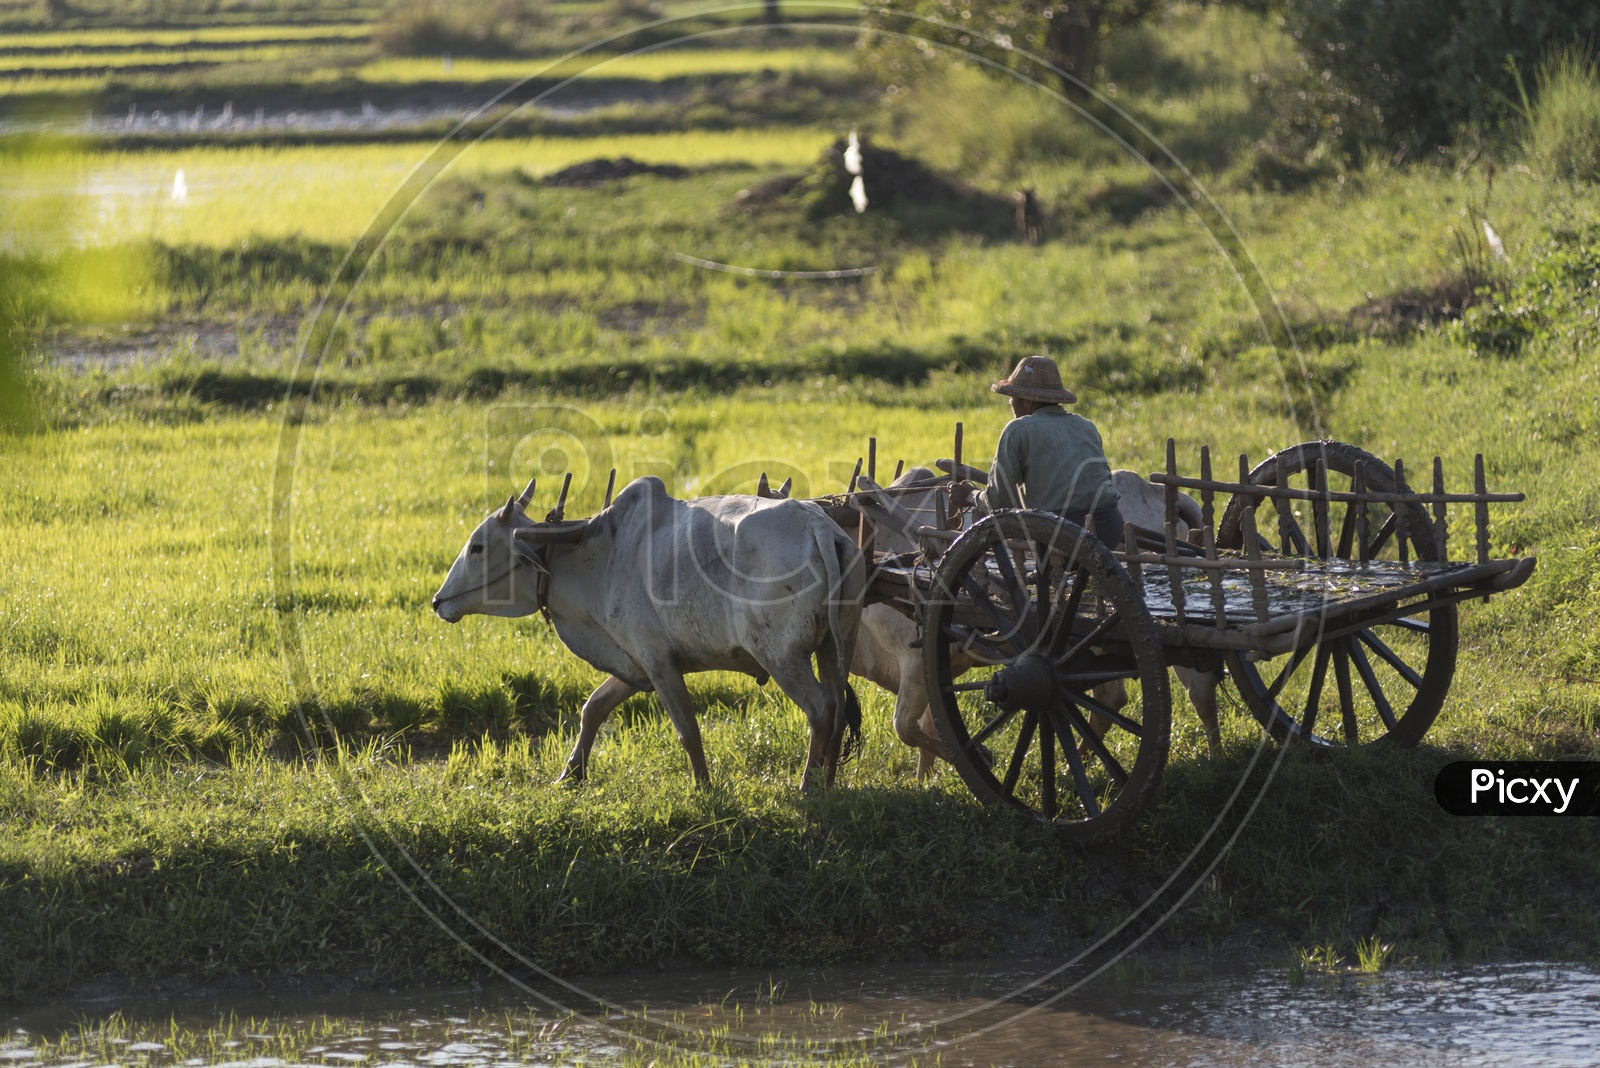 A Thailand farmer riding a bullock cart